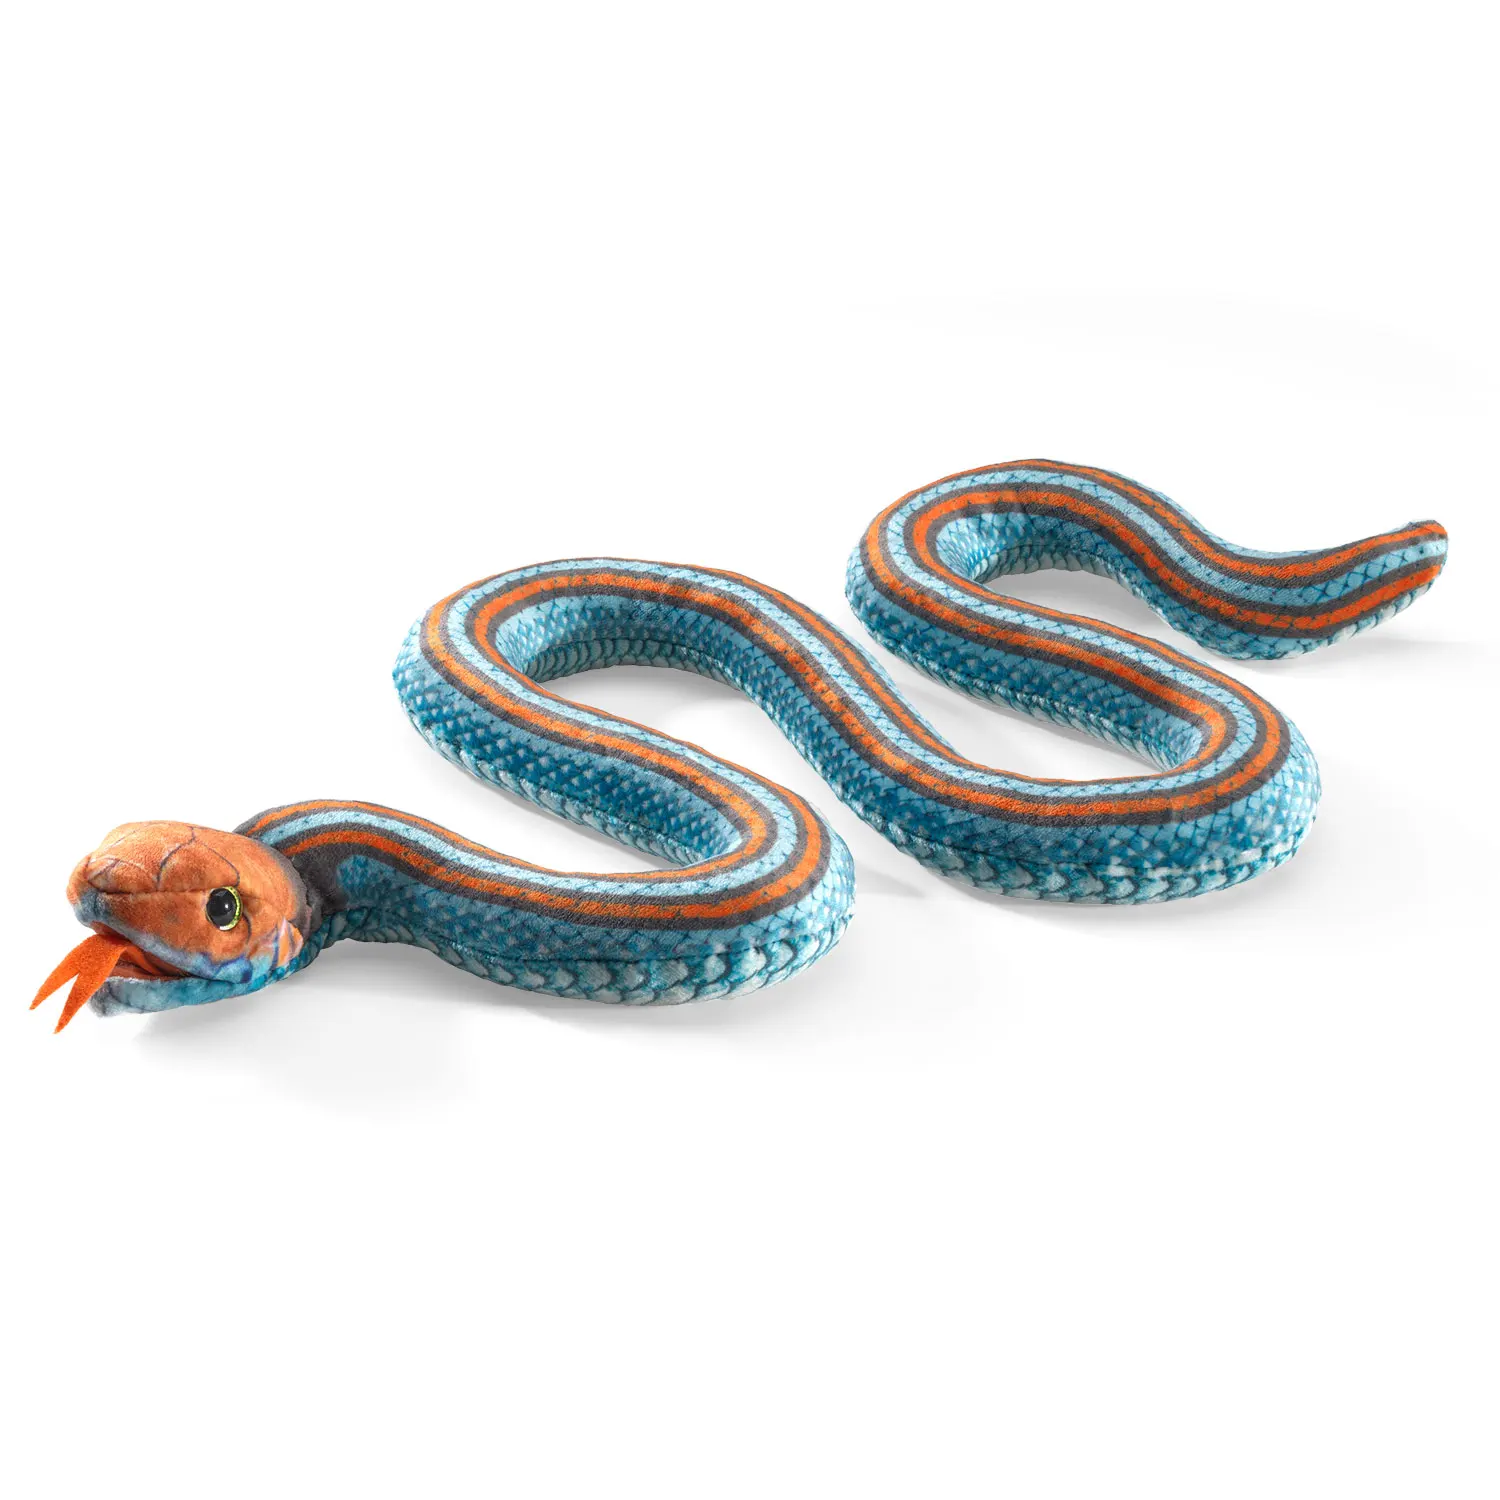 San Francisco Garter Snake / Strumpfbandnatter